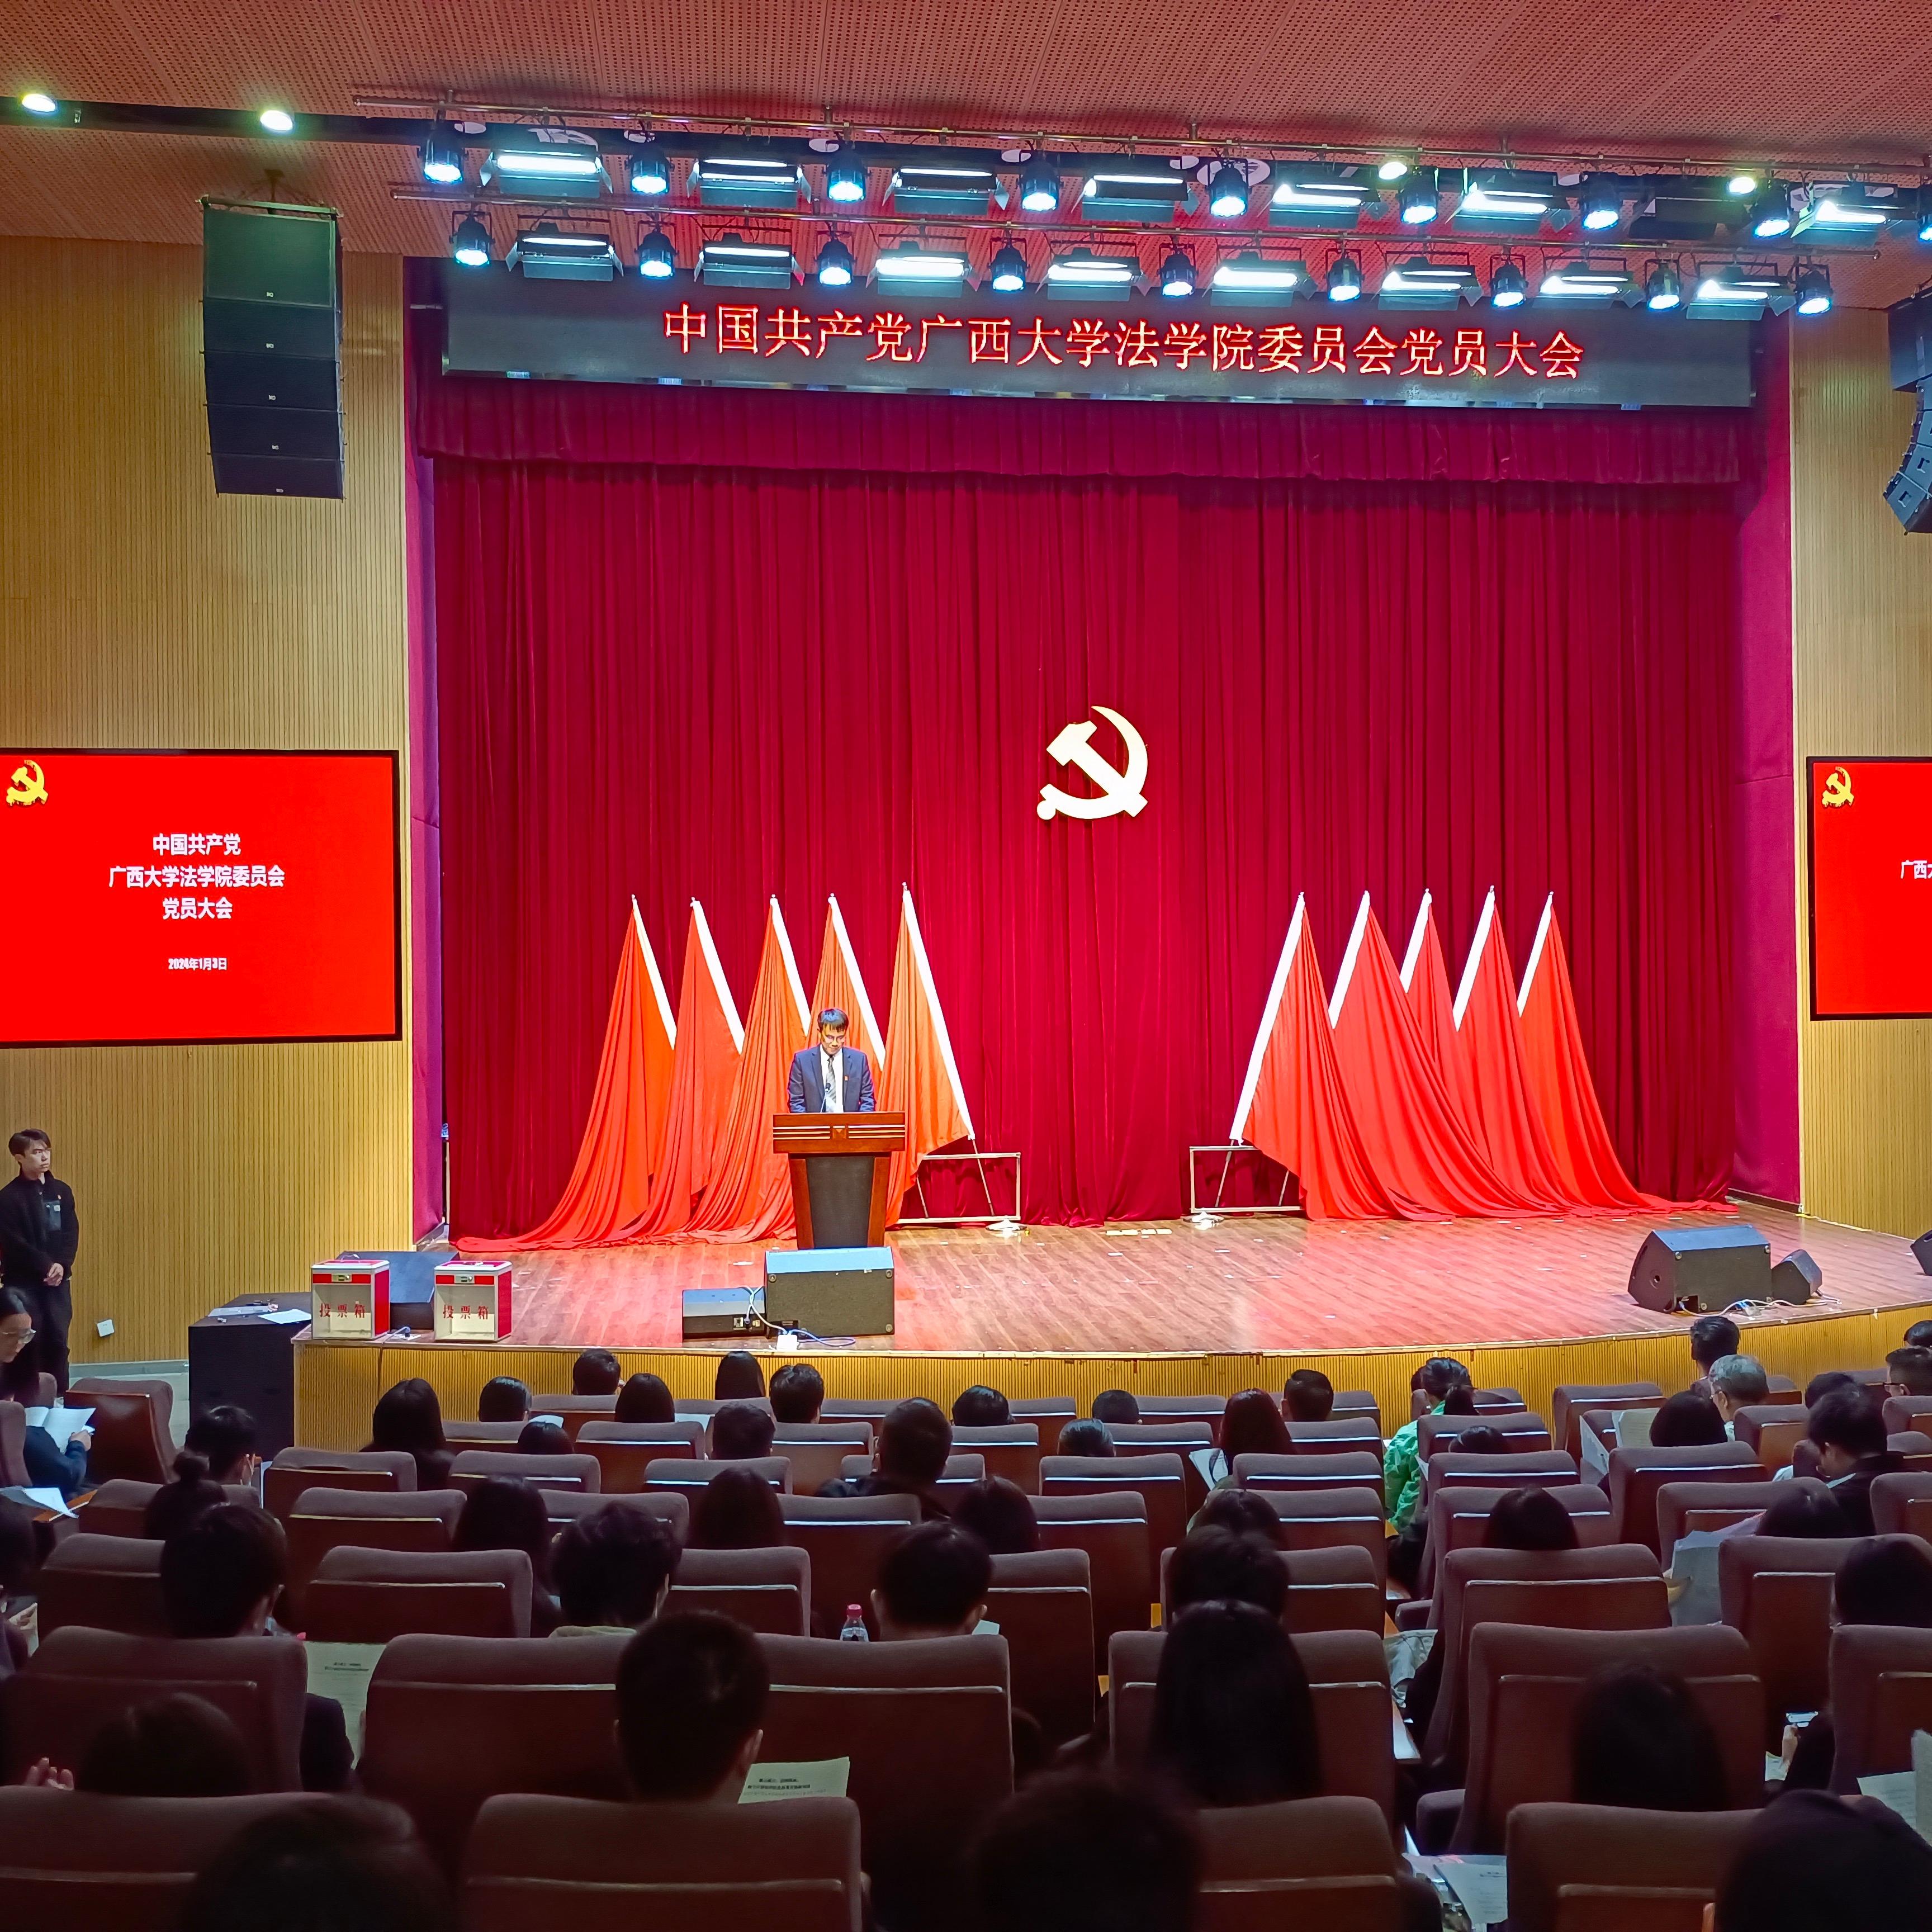 中国共产党永利欢乐娱人城法学院党员大会胜利召开